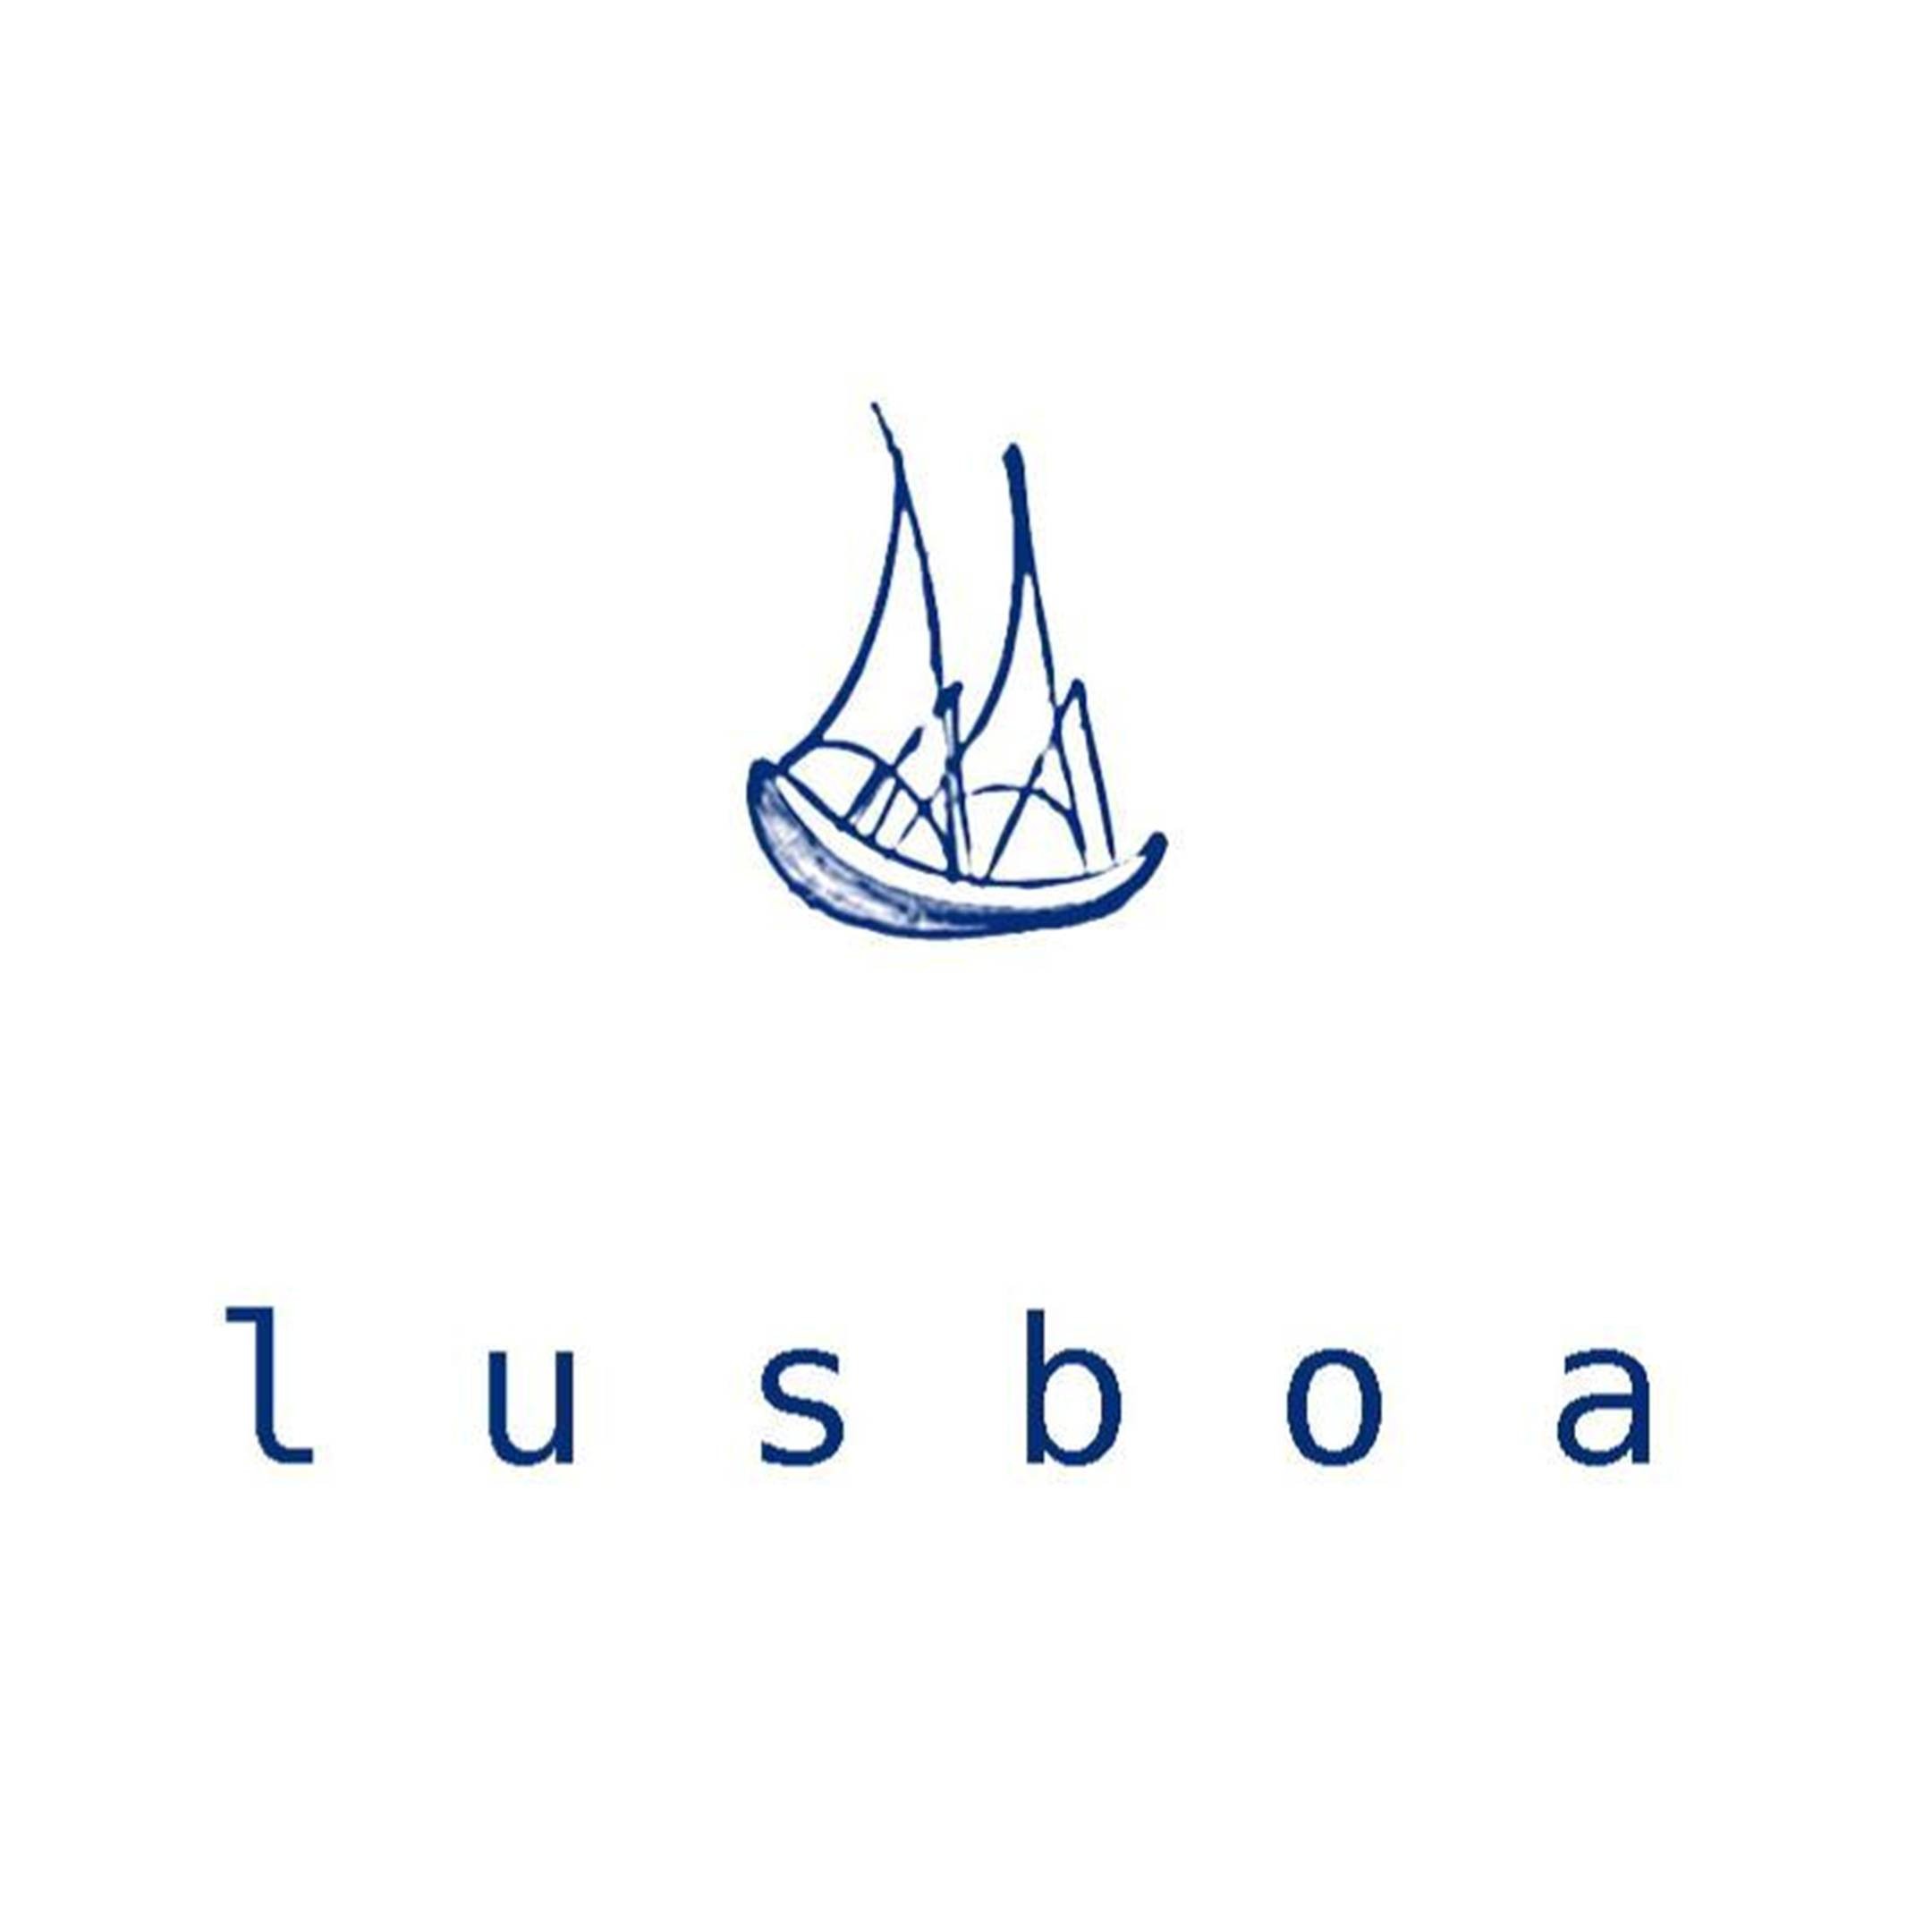 Lusboa